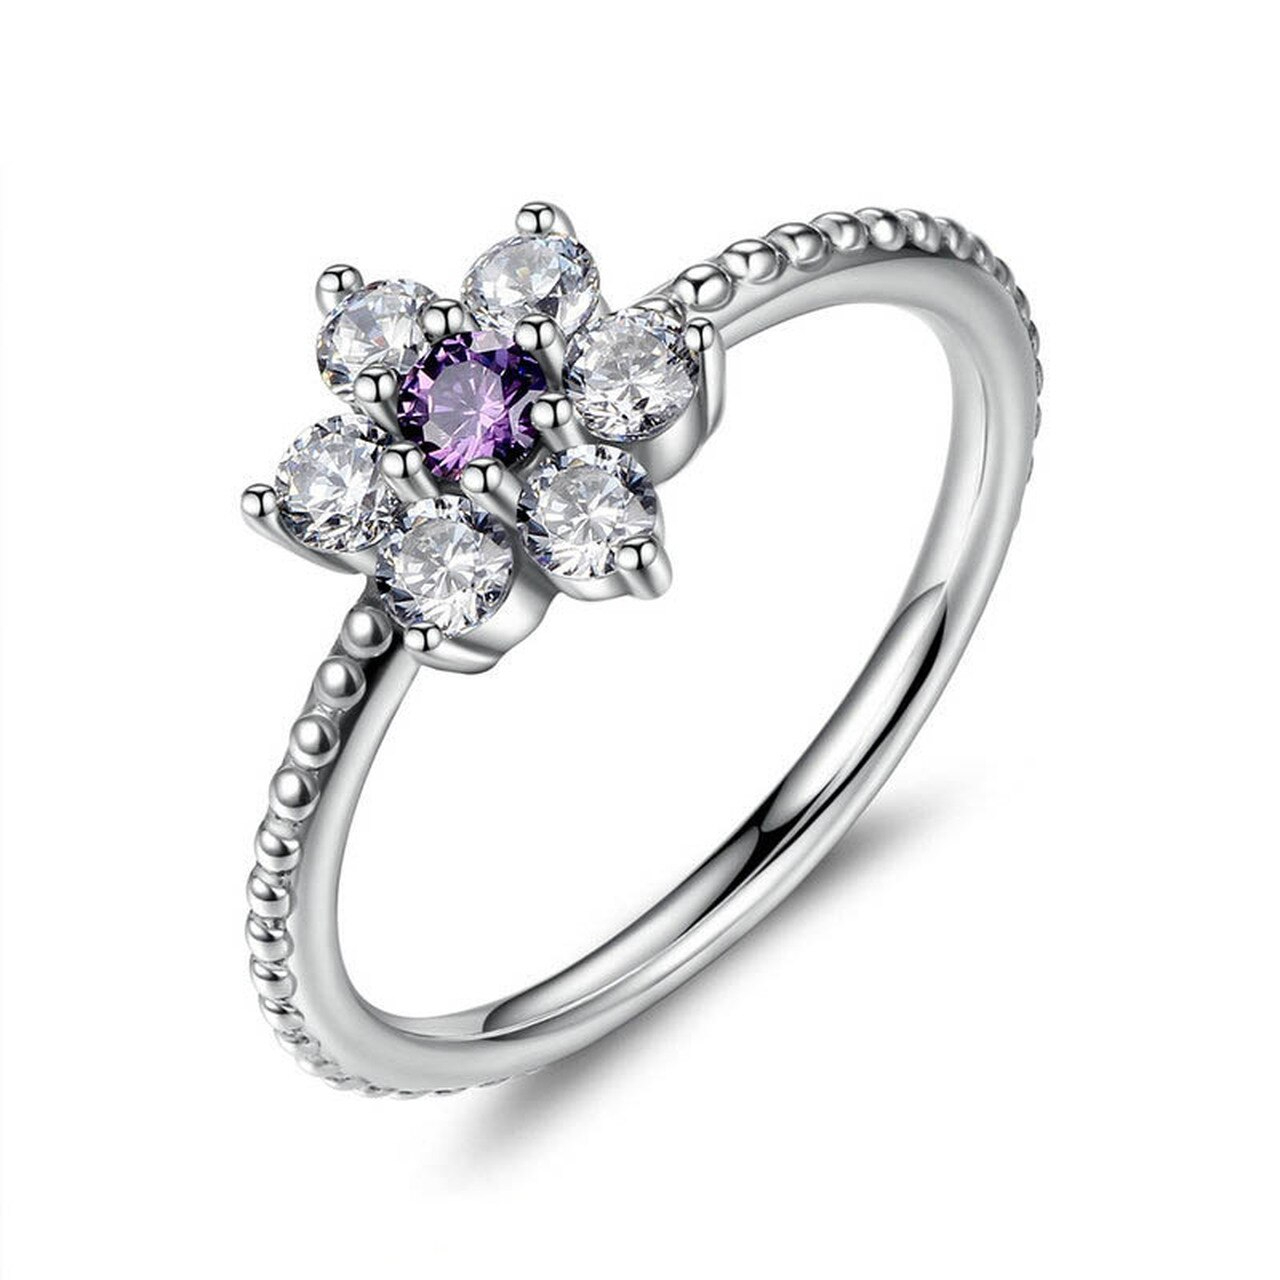 Linda\'s Jewelry Strieborný prsteň Flower Shiny violet Ag 925/1000 IPR023-8 Veľkosť: 56